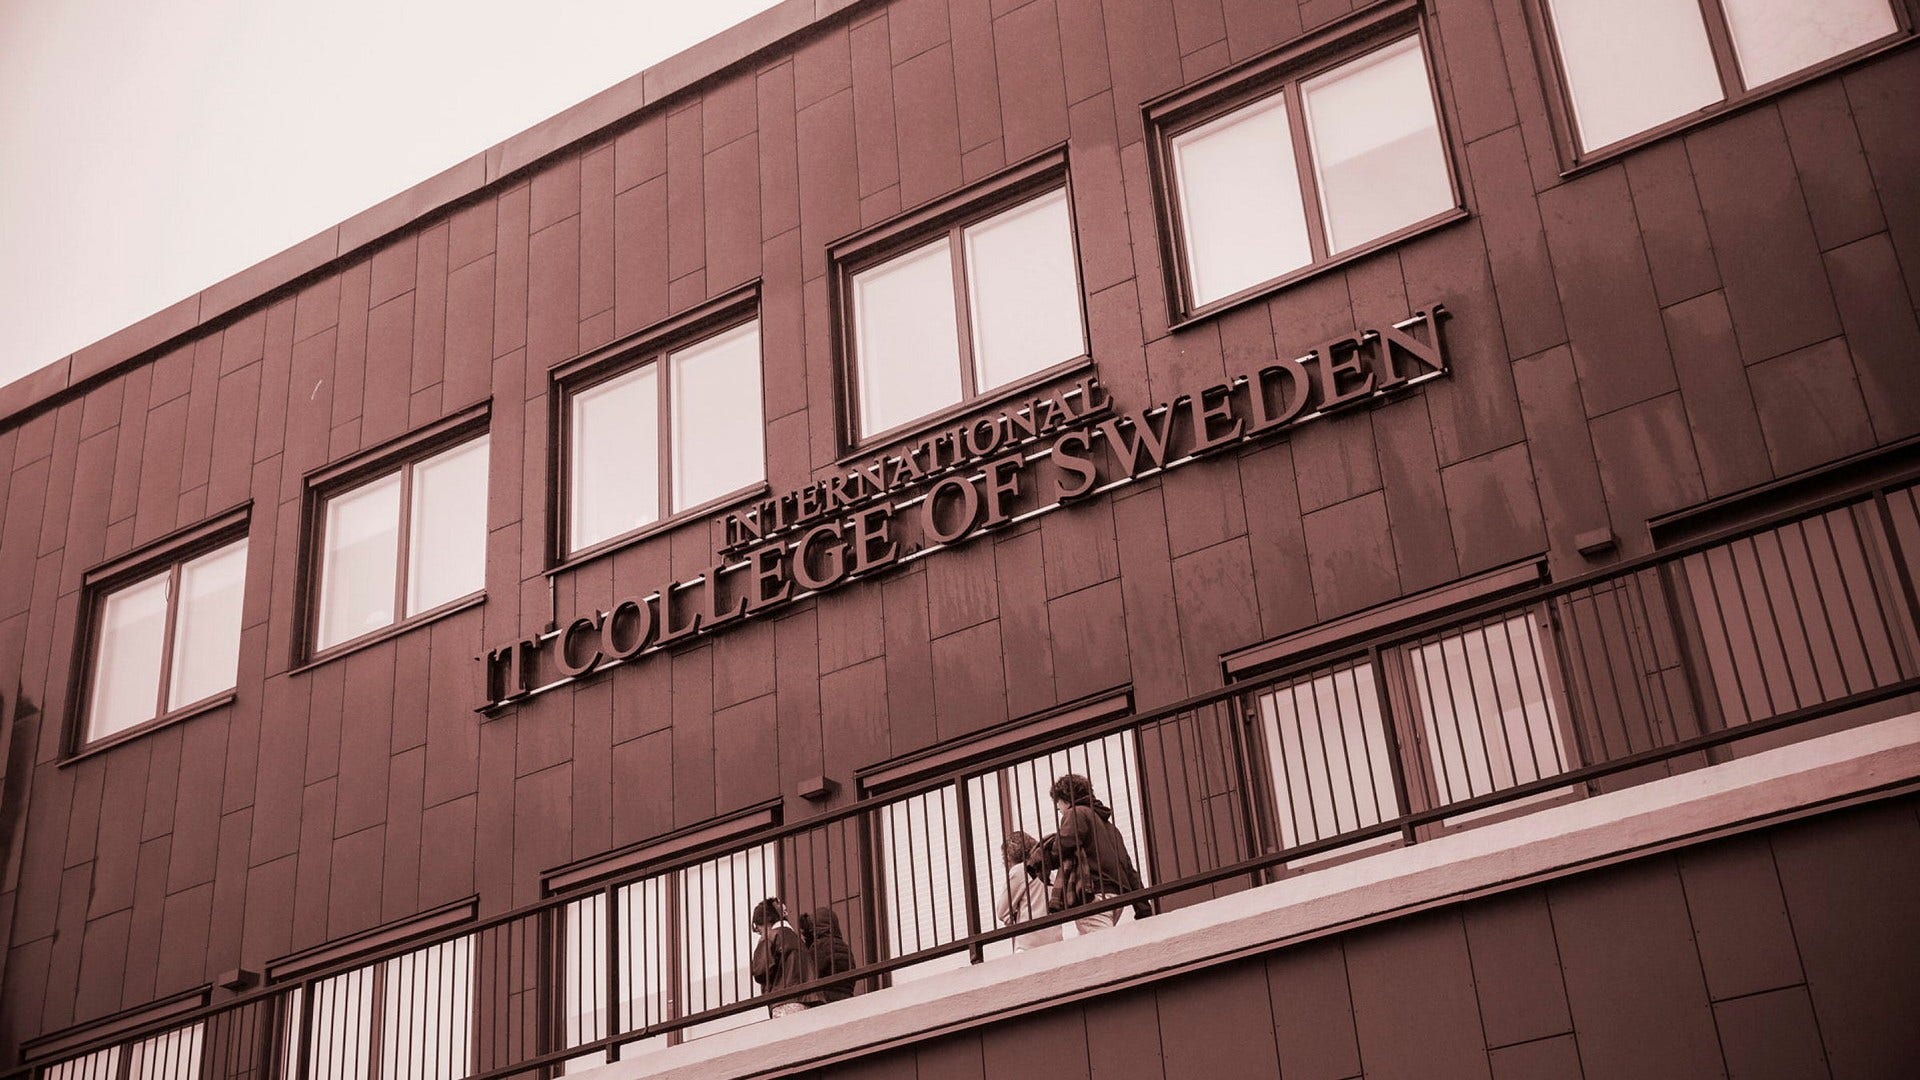 International IT College of Sweden är en av de skolor som fått indraget tillstånd efter varningar från bland annat Säpo.